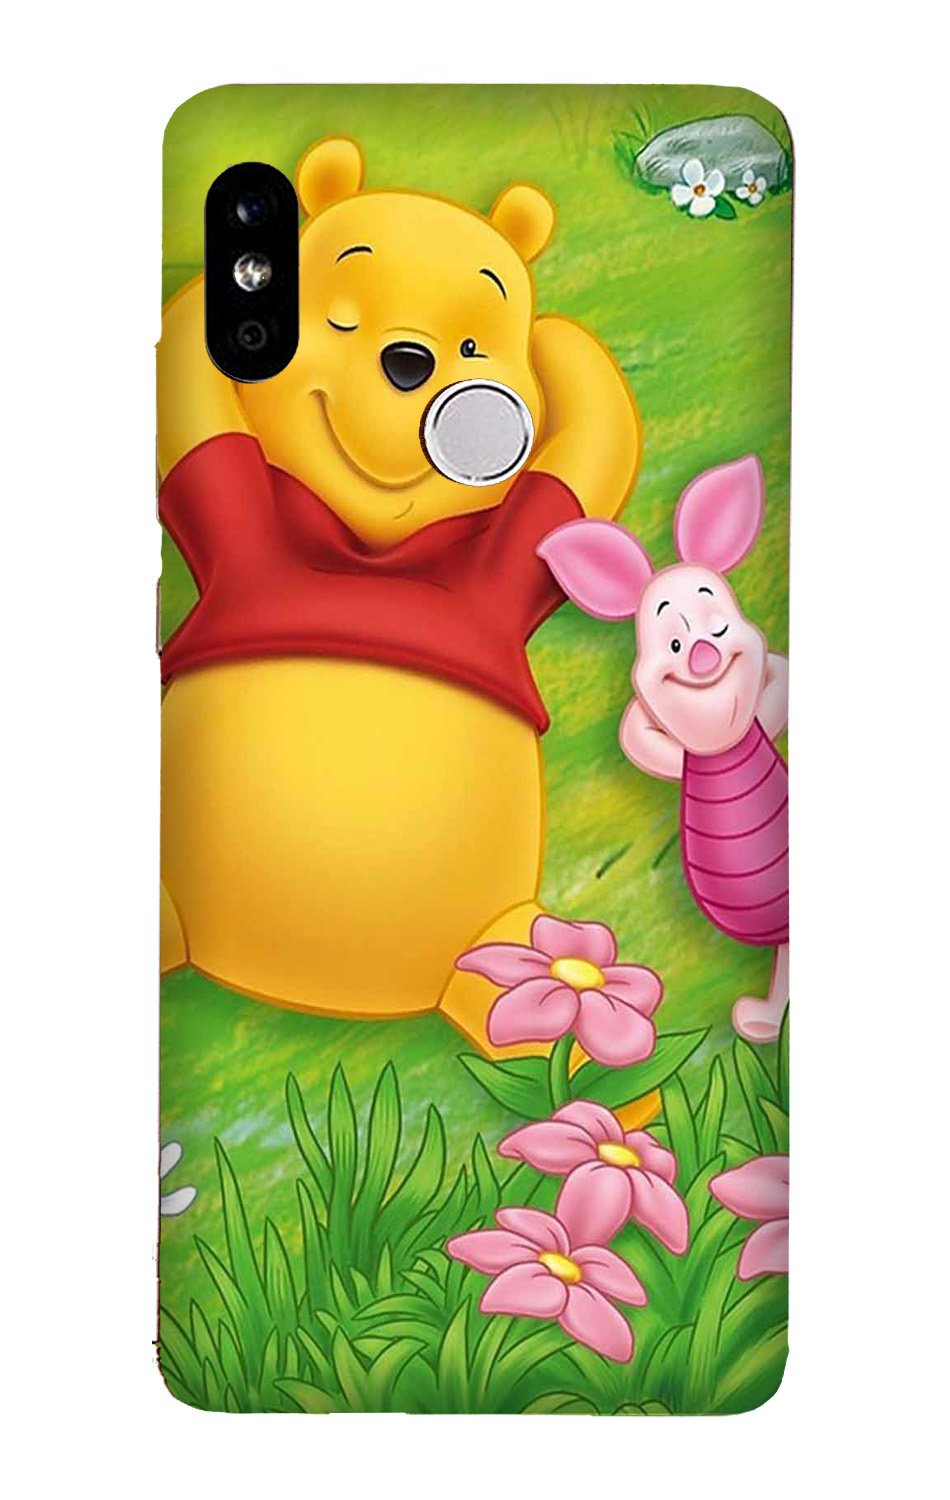 Winnie The Pooh Mobile Back Case for Redmi 6 Pro(Design - 348)